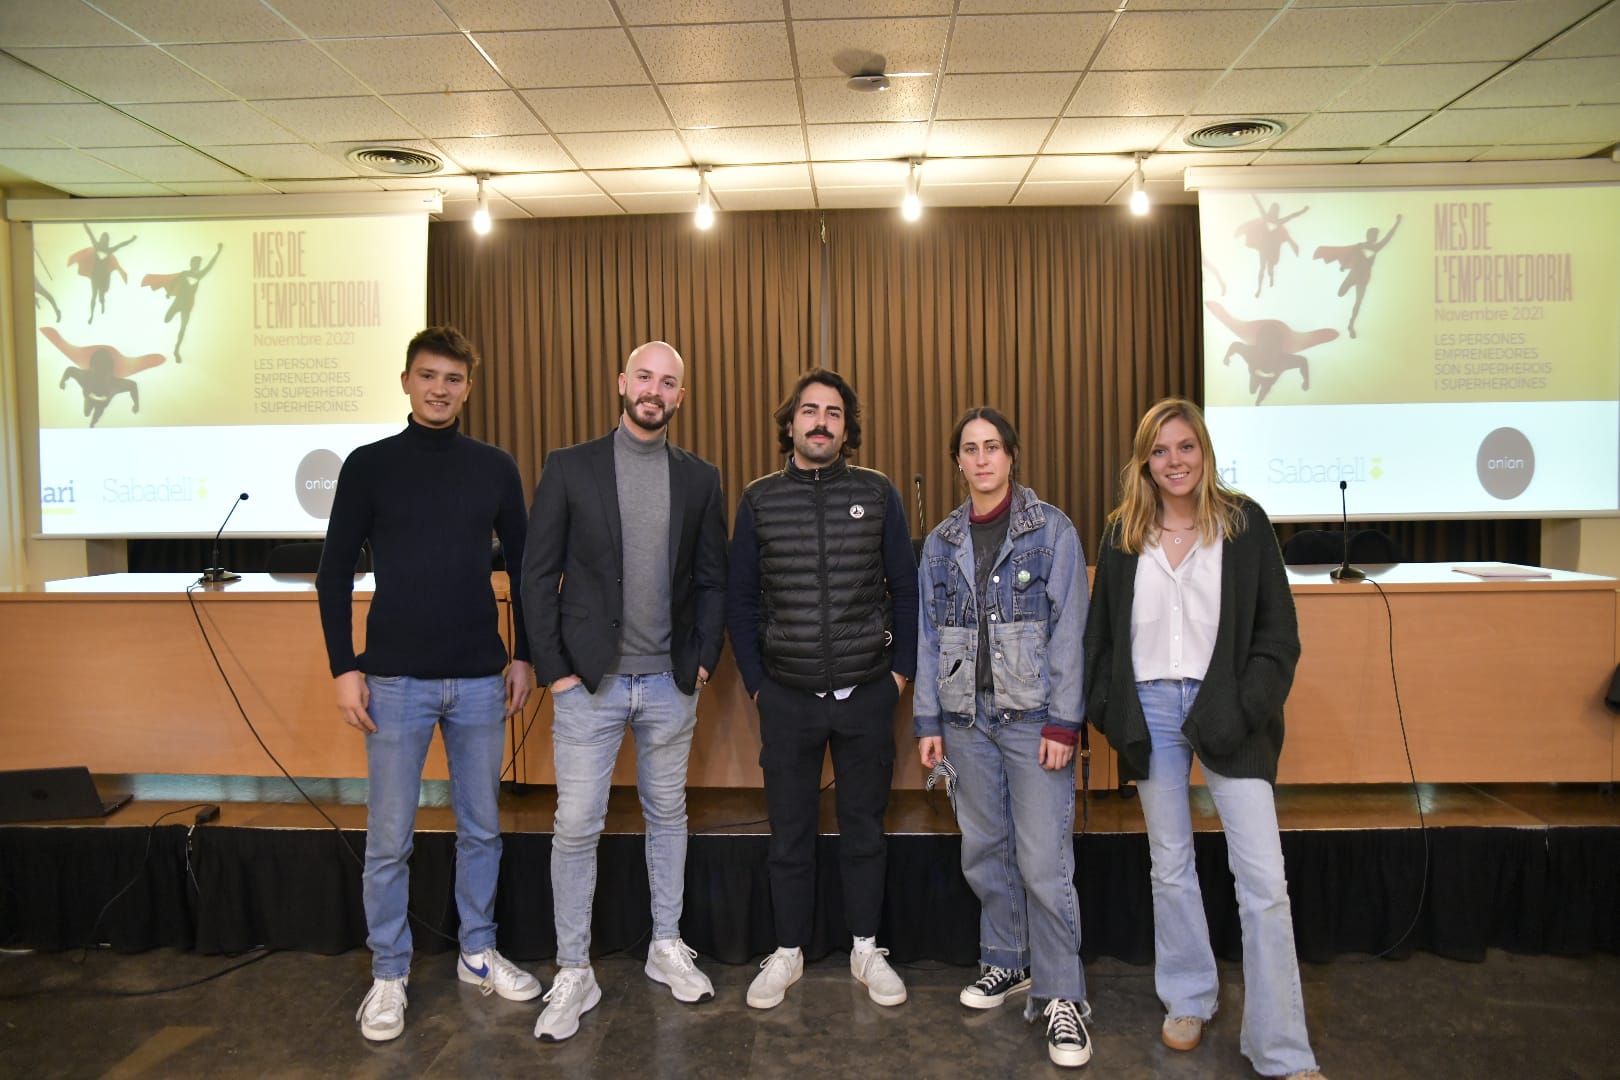 Martínez, Molina, Navarro, Marcial i Coll, a l'acte de la Xarxa Onion / LLUÍS FRANCO